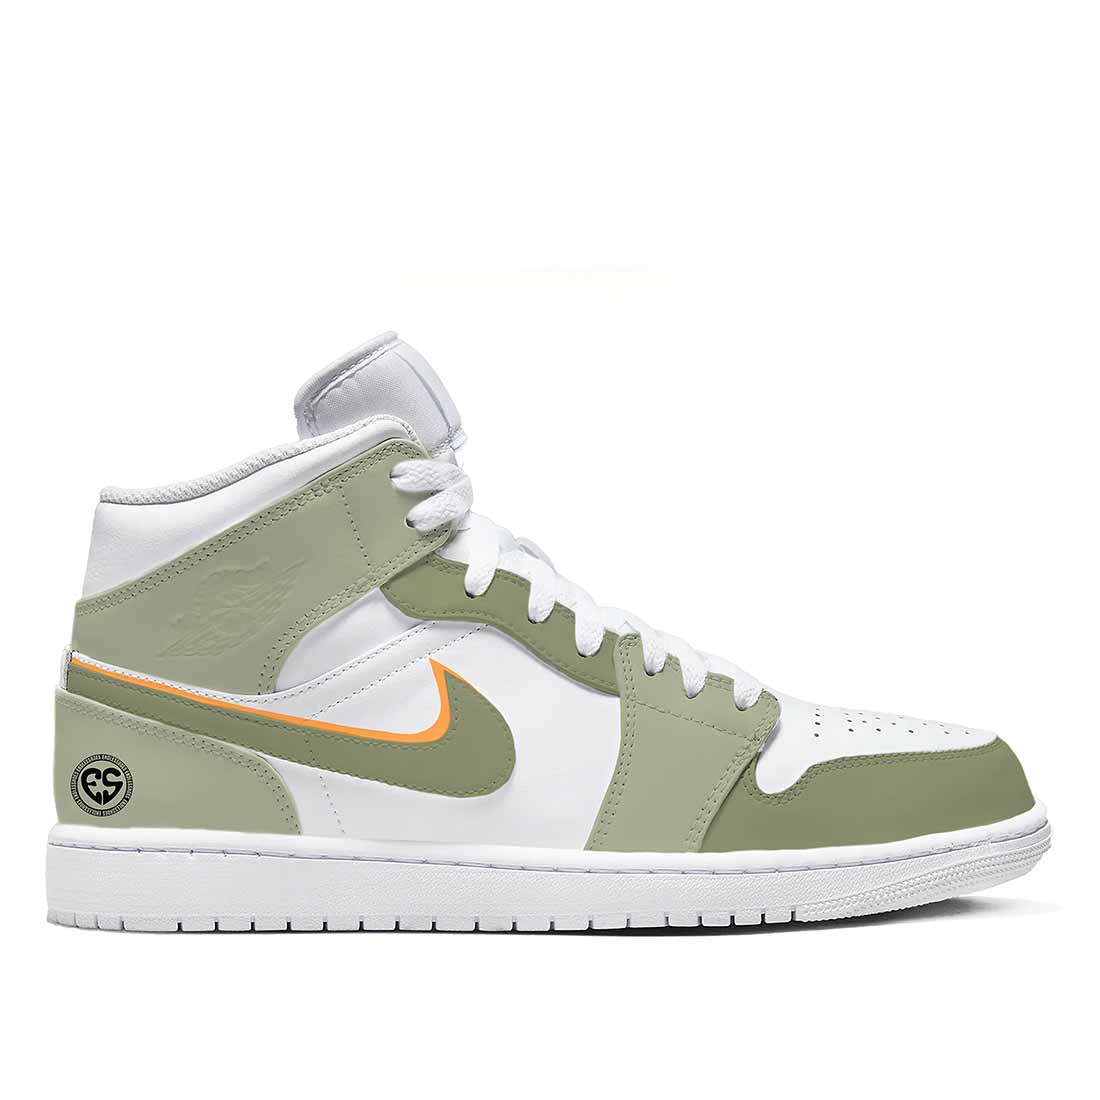 Nike Jordan bianche dipinte a mano con sfumature di verde doppio swoosh verde e arancione